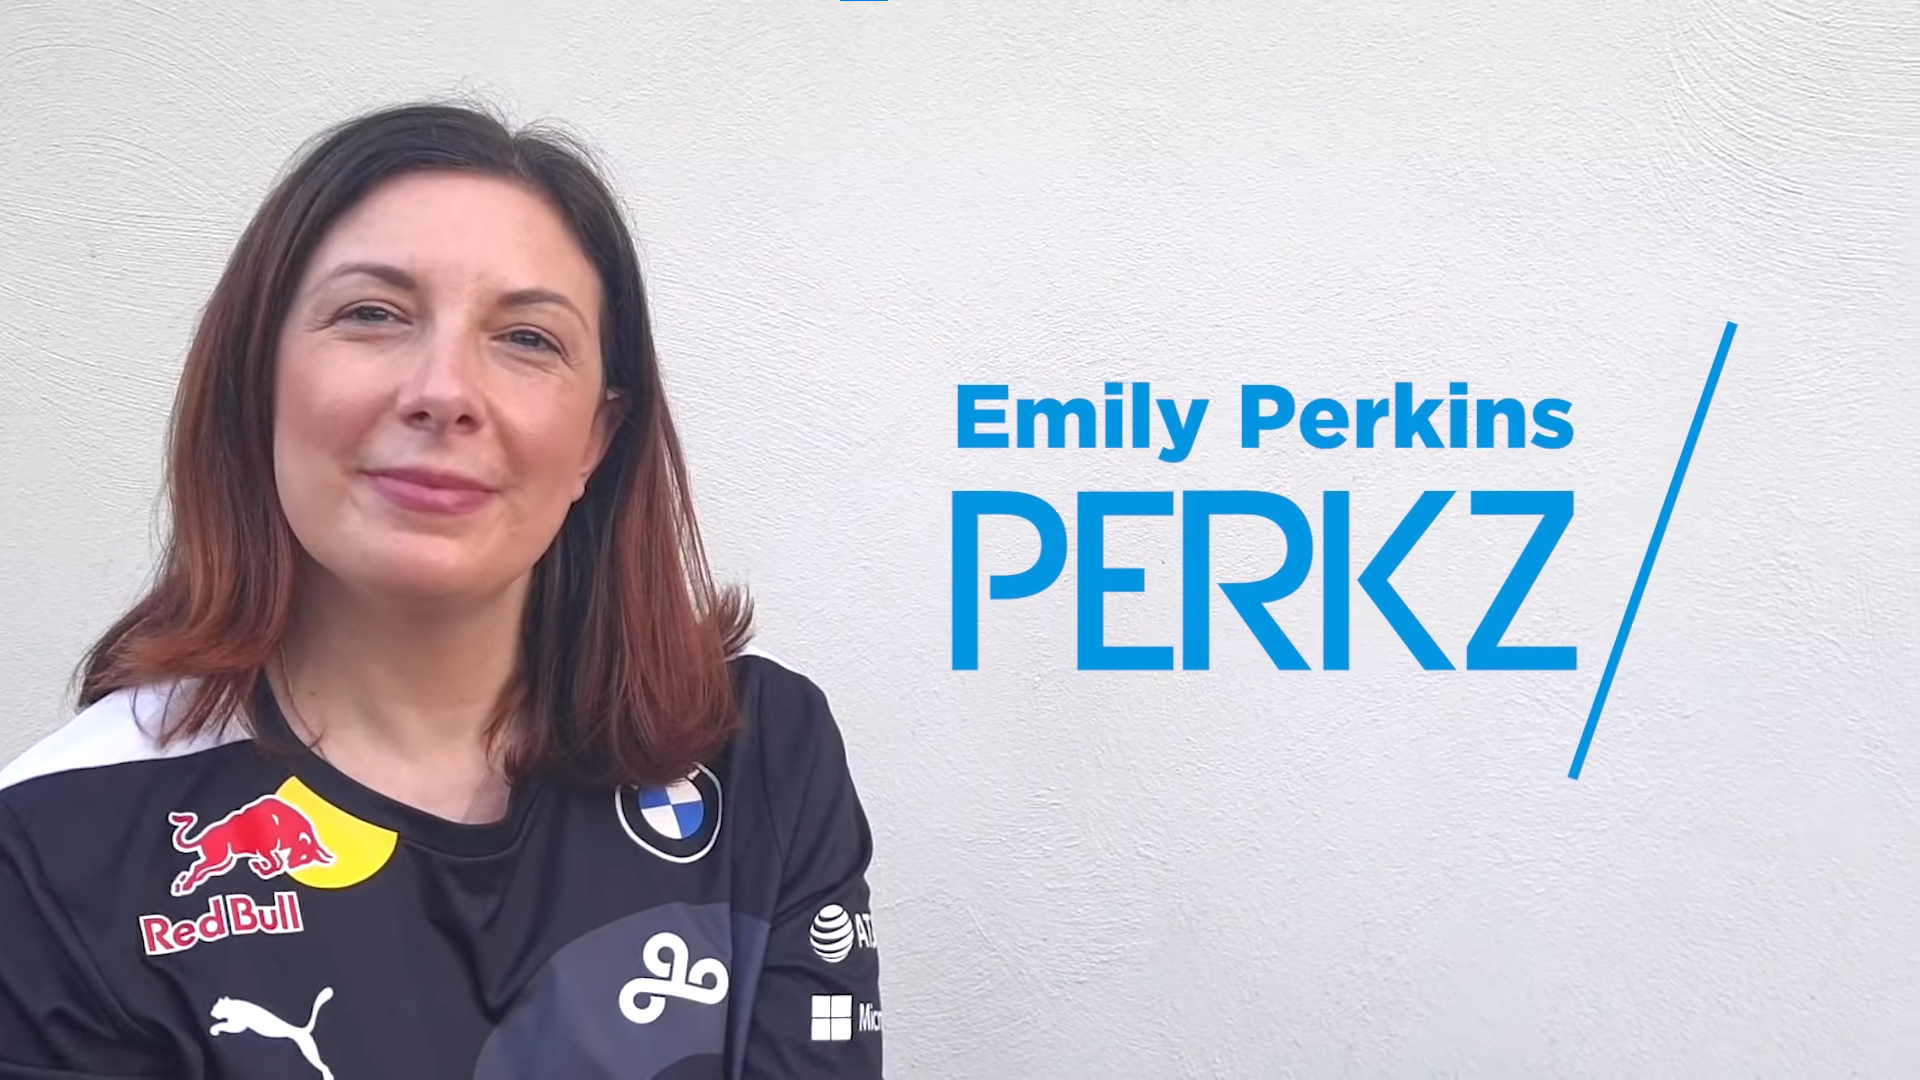 Emily "Perkz" Perkins